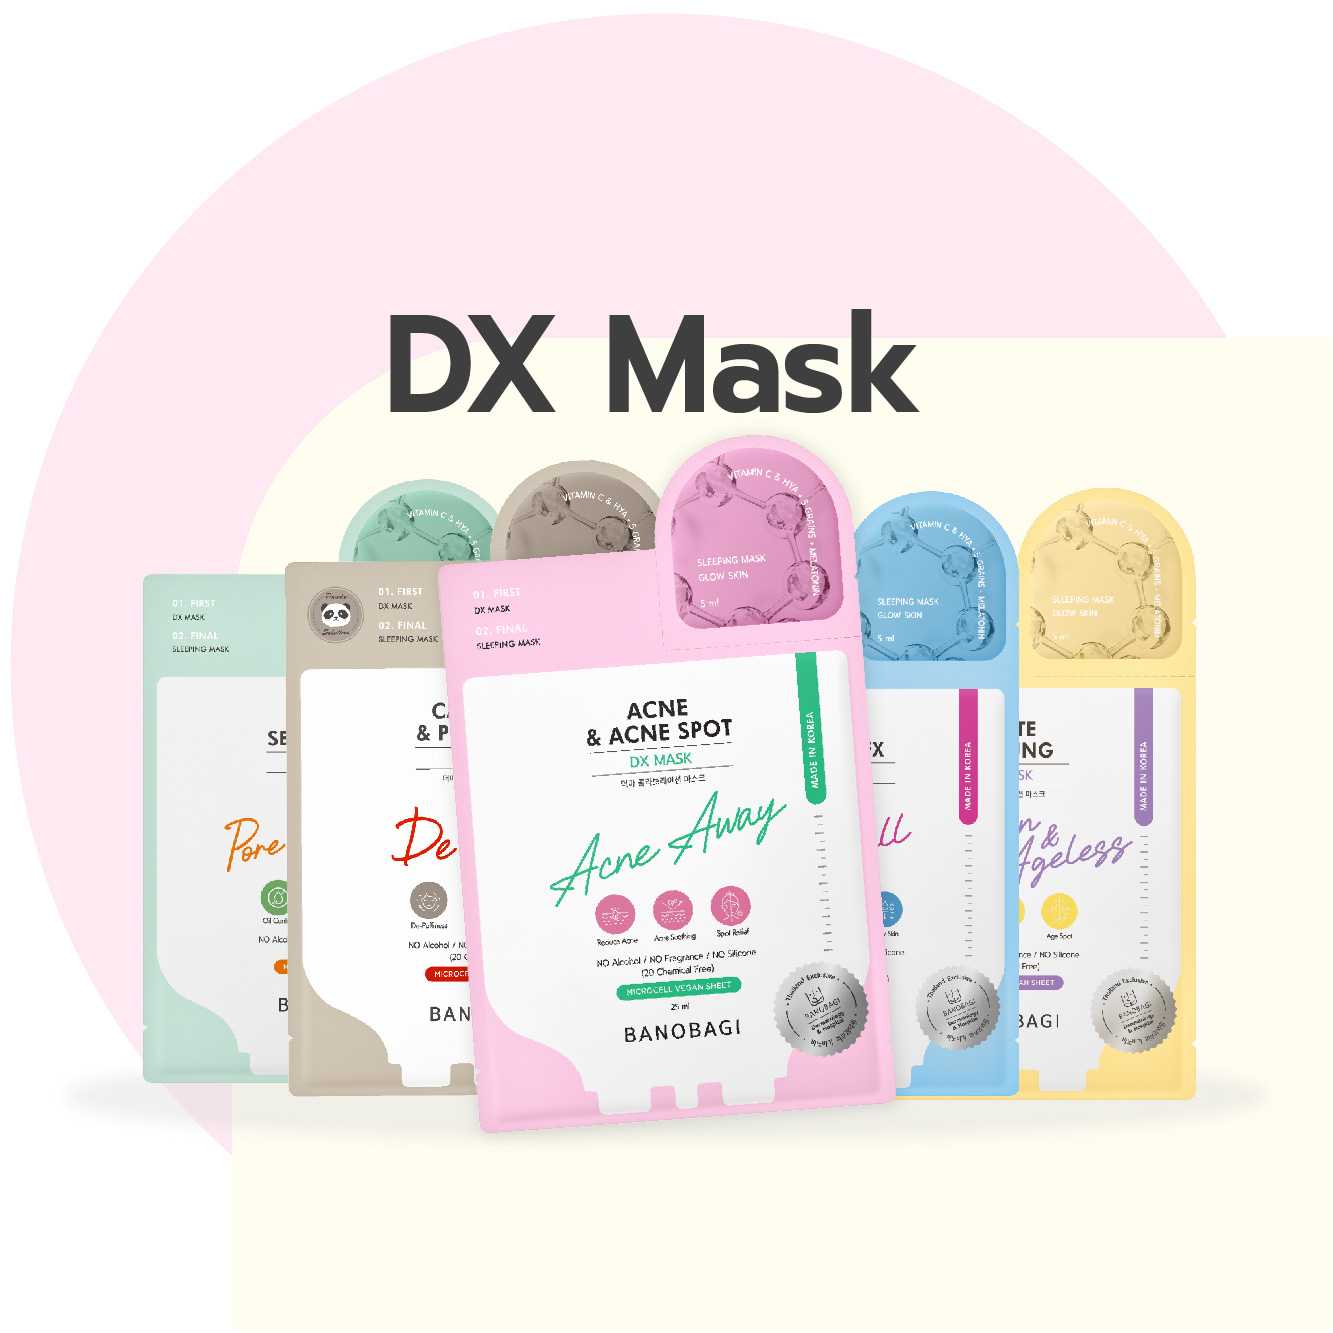 DX Mask